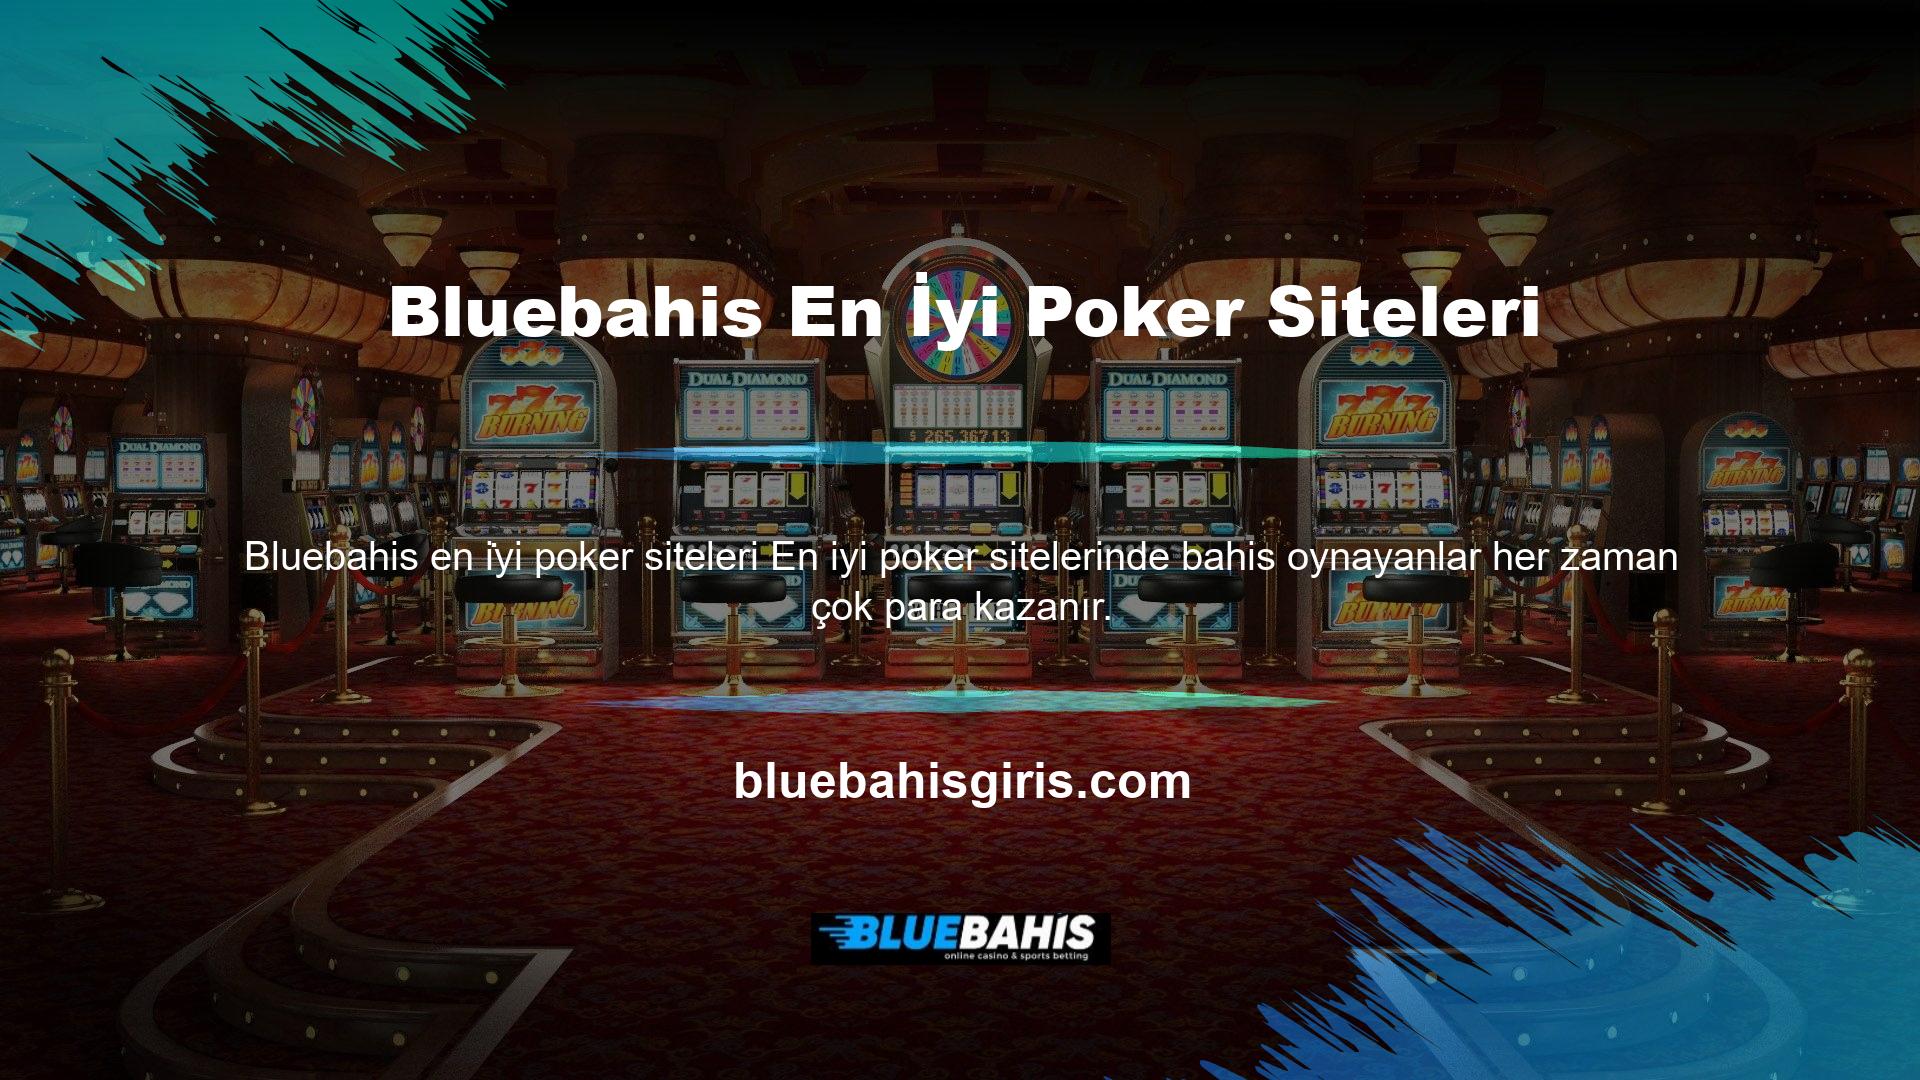 Ancak casino siteleri arasında en parlak olanı pokerdir